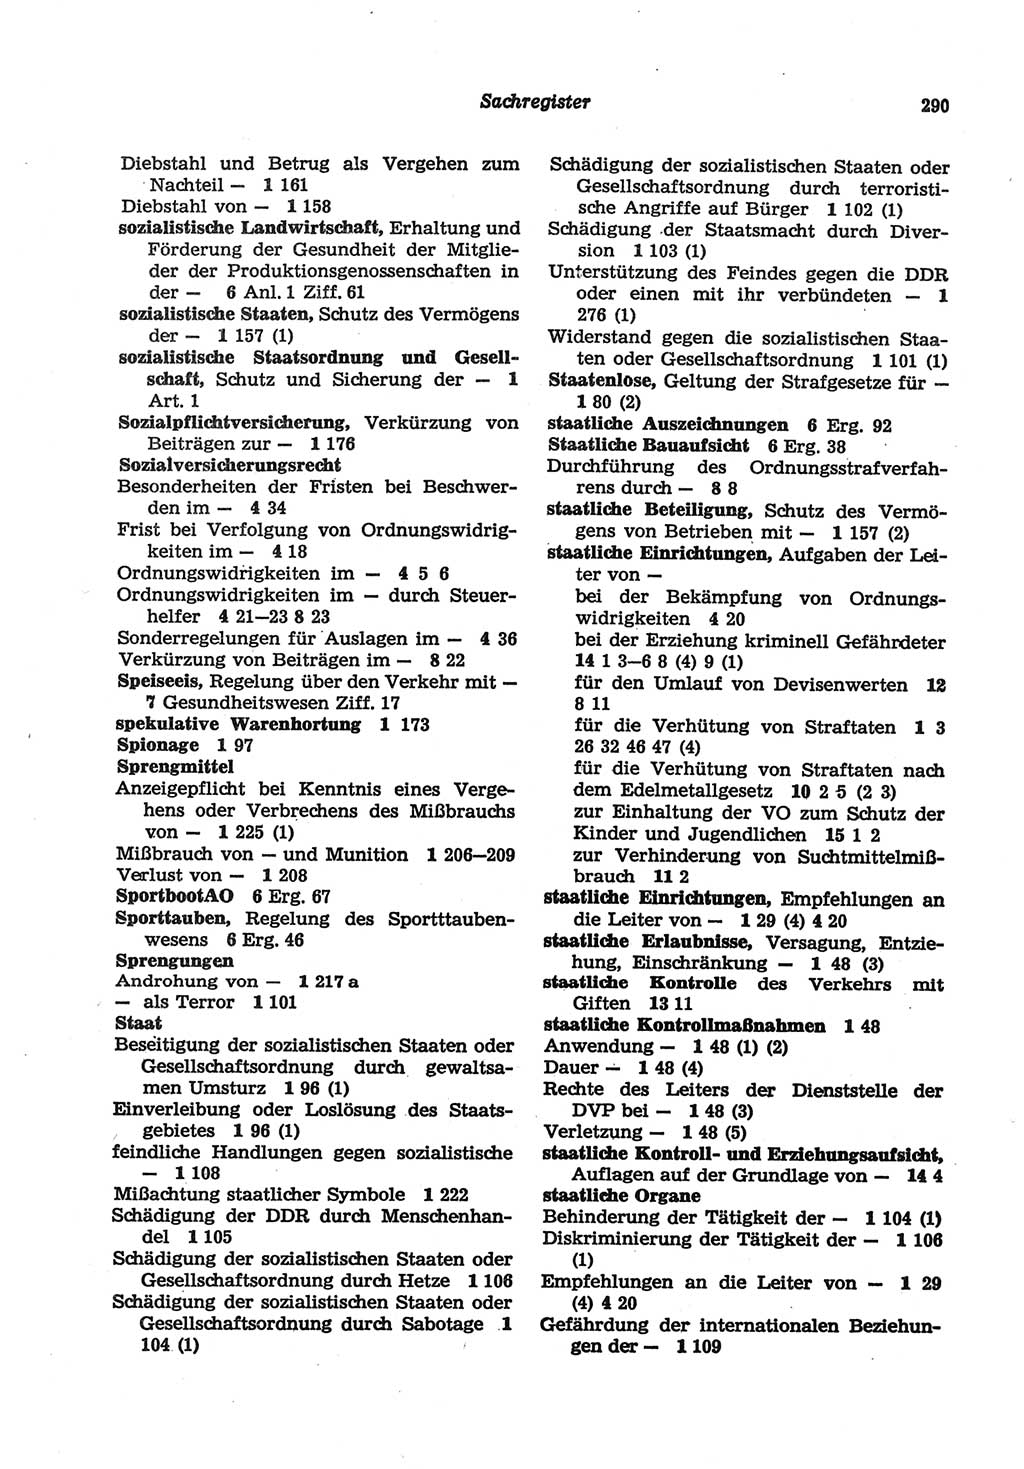 Strafgesetzbuch (StGB) der Deutschen Demokratischen Republik (DDR) und angrenzende Gesetze und Bestimmungen 1977, Seite 290 (StGB DDR Ges. Best. 1977, S. 290)